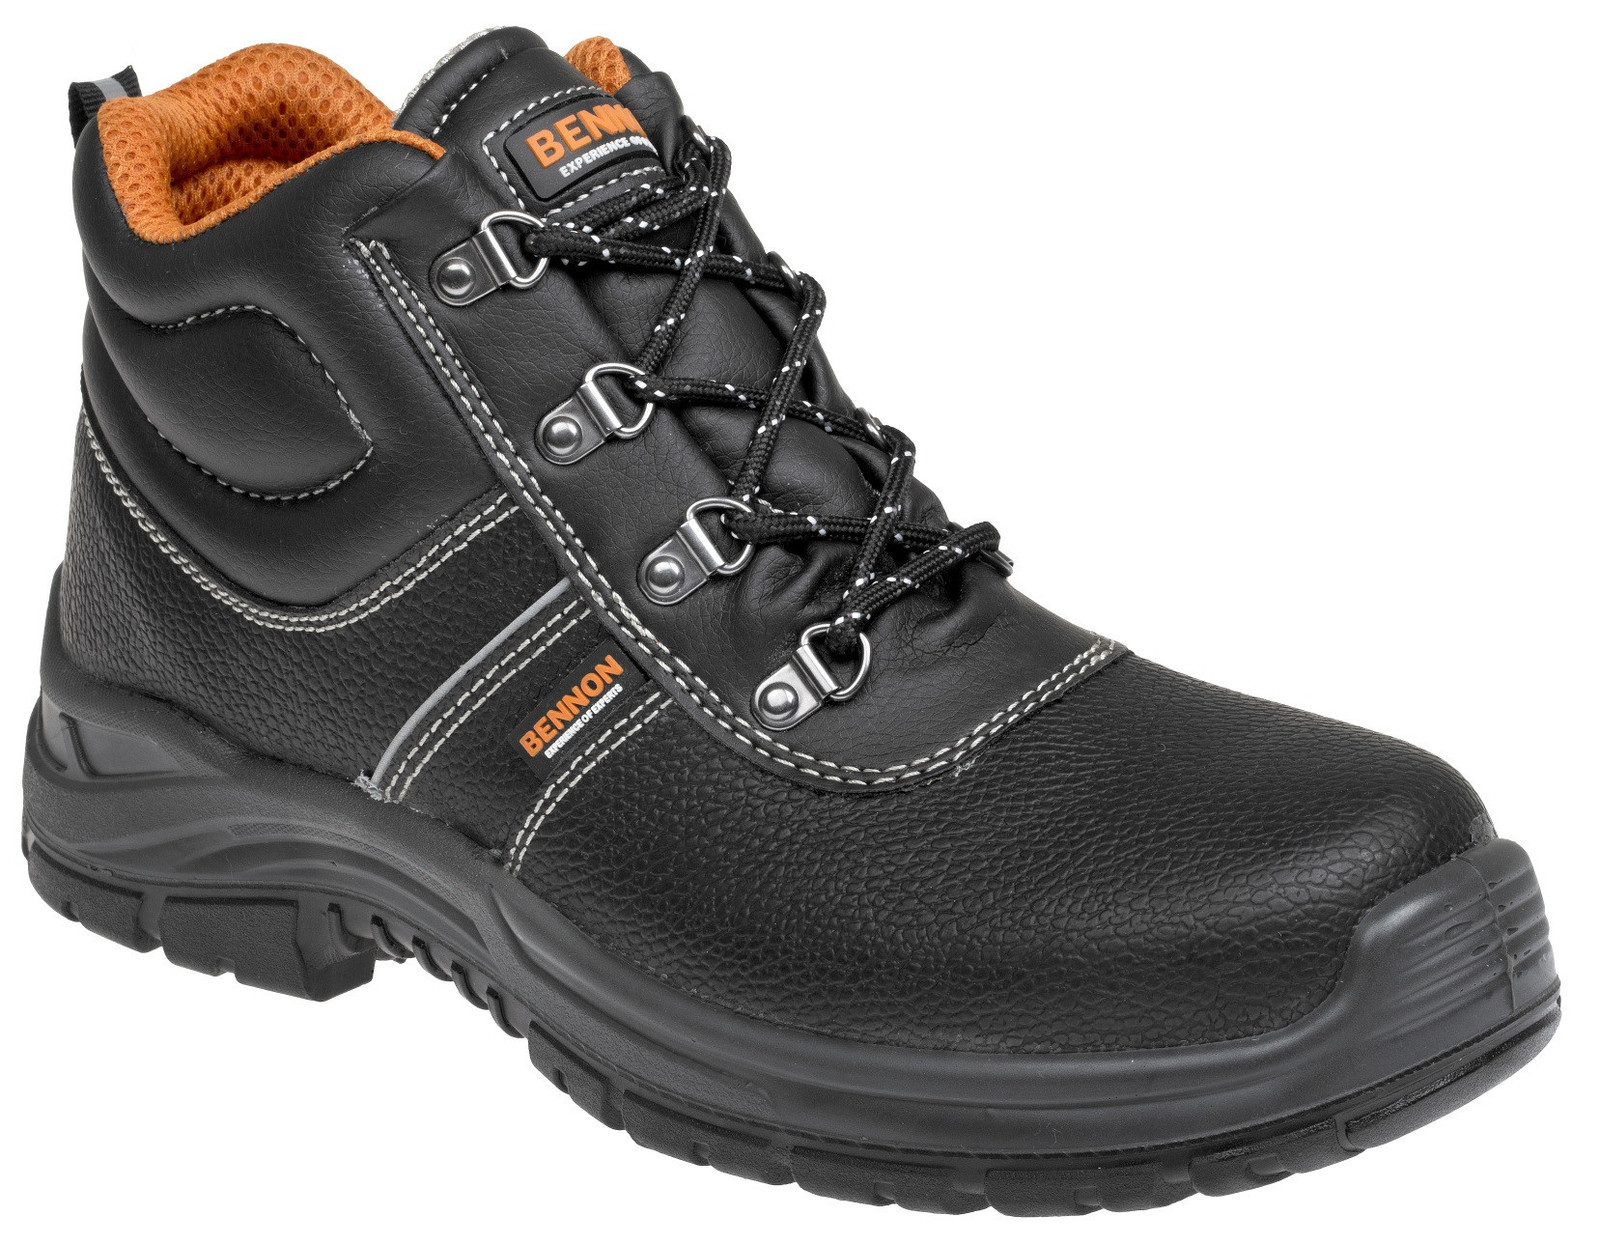 Bezpečnostná obuv Bennon Basic S3 - veľkosť: 47, farba: čierna